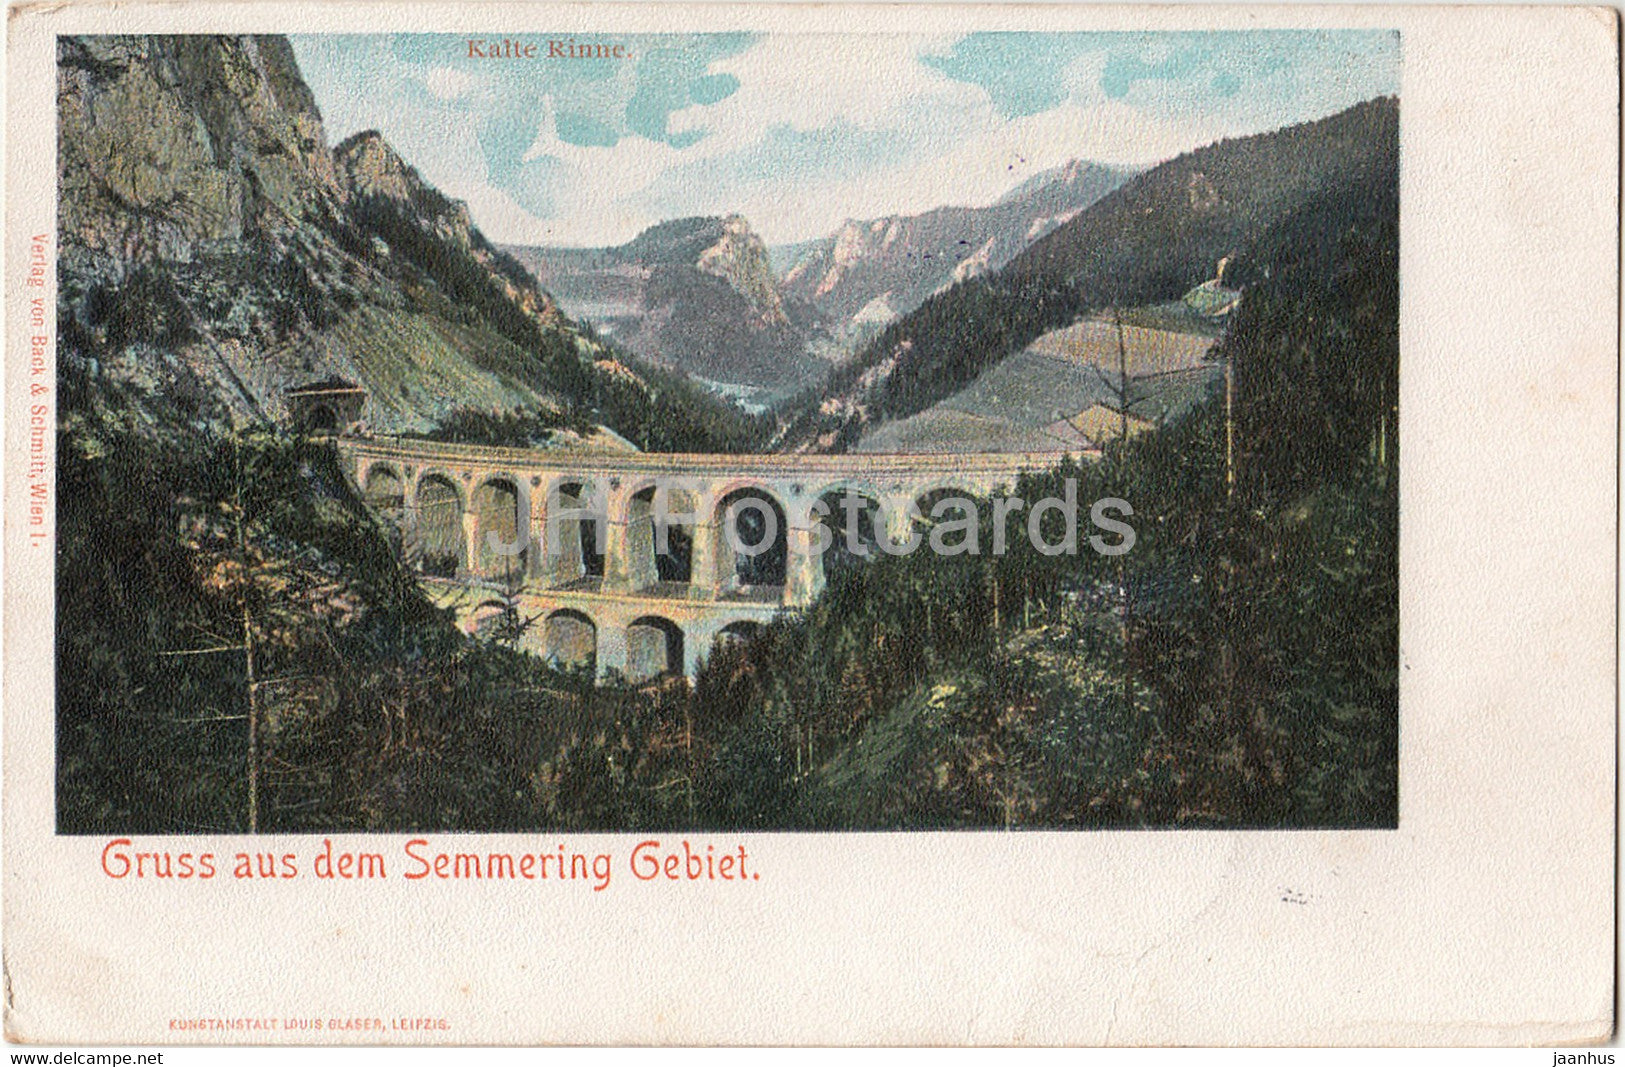 Gruss aus dem Semmering Gebiet - Kalte Rinne - Drucksache - old postcard - 1900 - Austria - used - JH Postcards